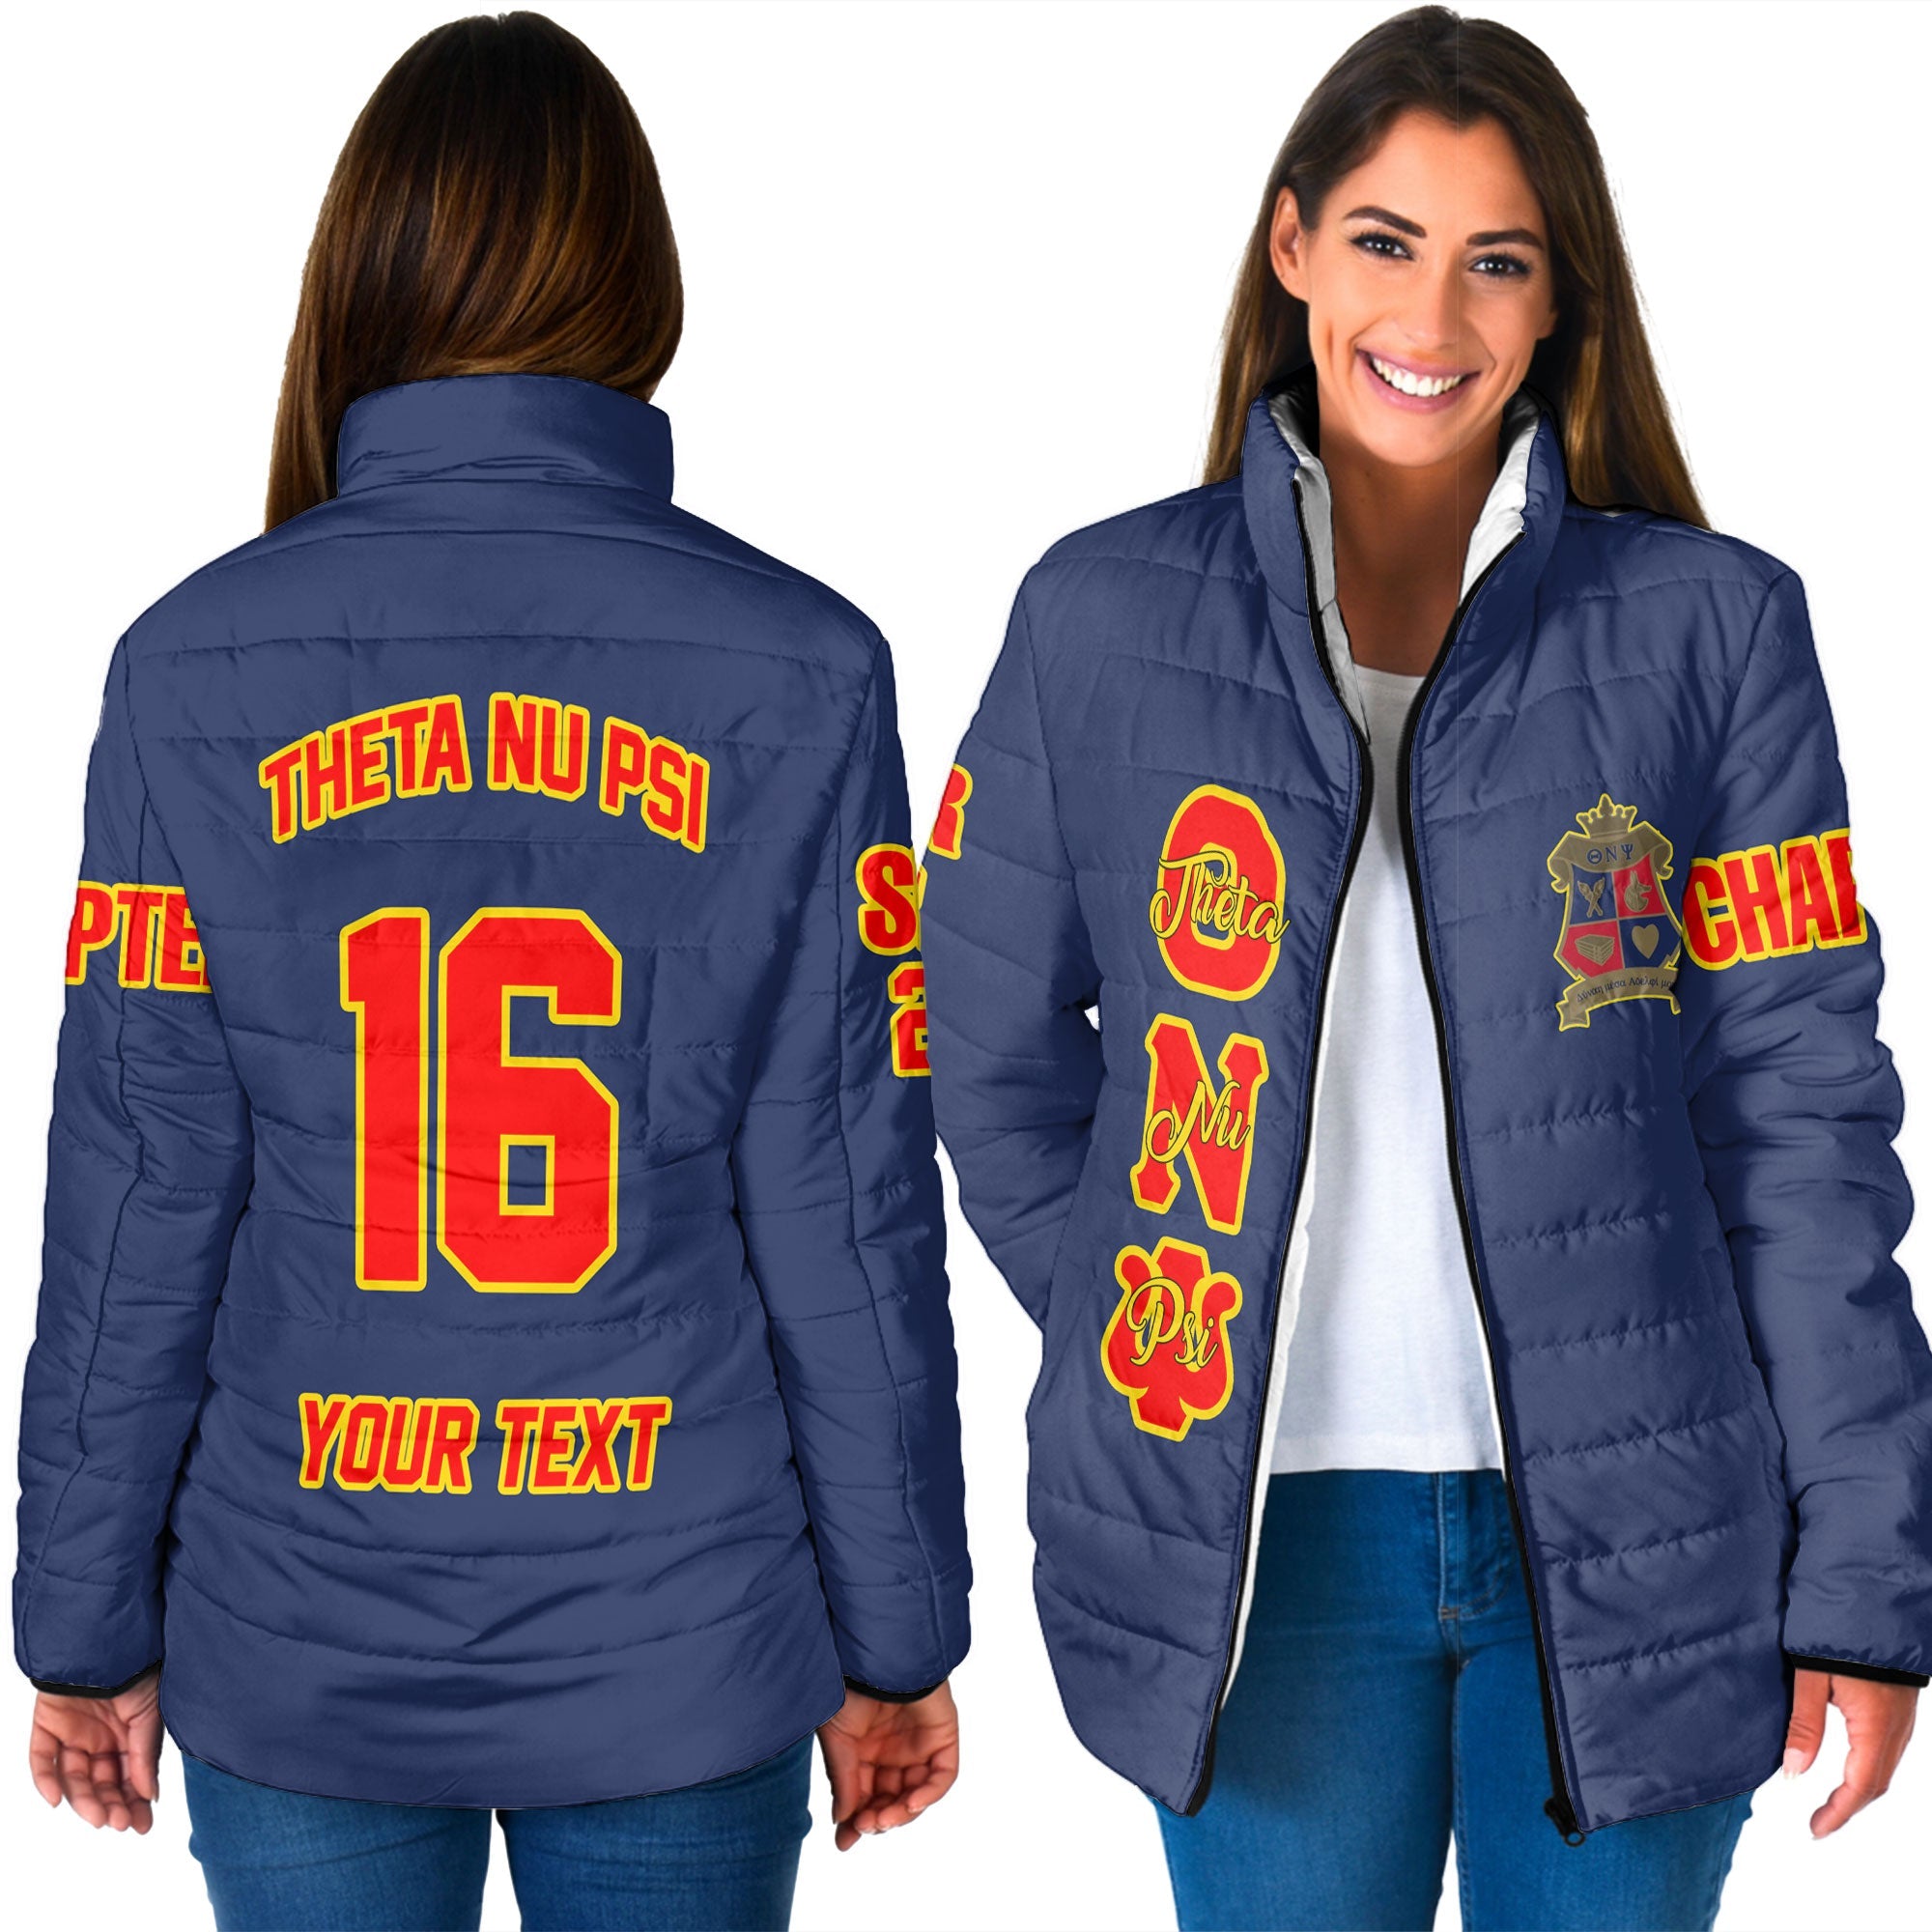 Fraternity Jacket - Personalized Theta Nu Psi Women Padded Jacket Original Blue Style